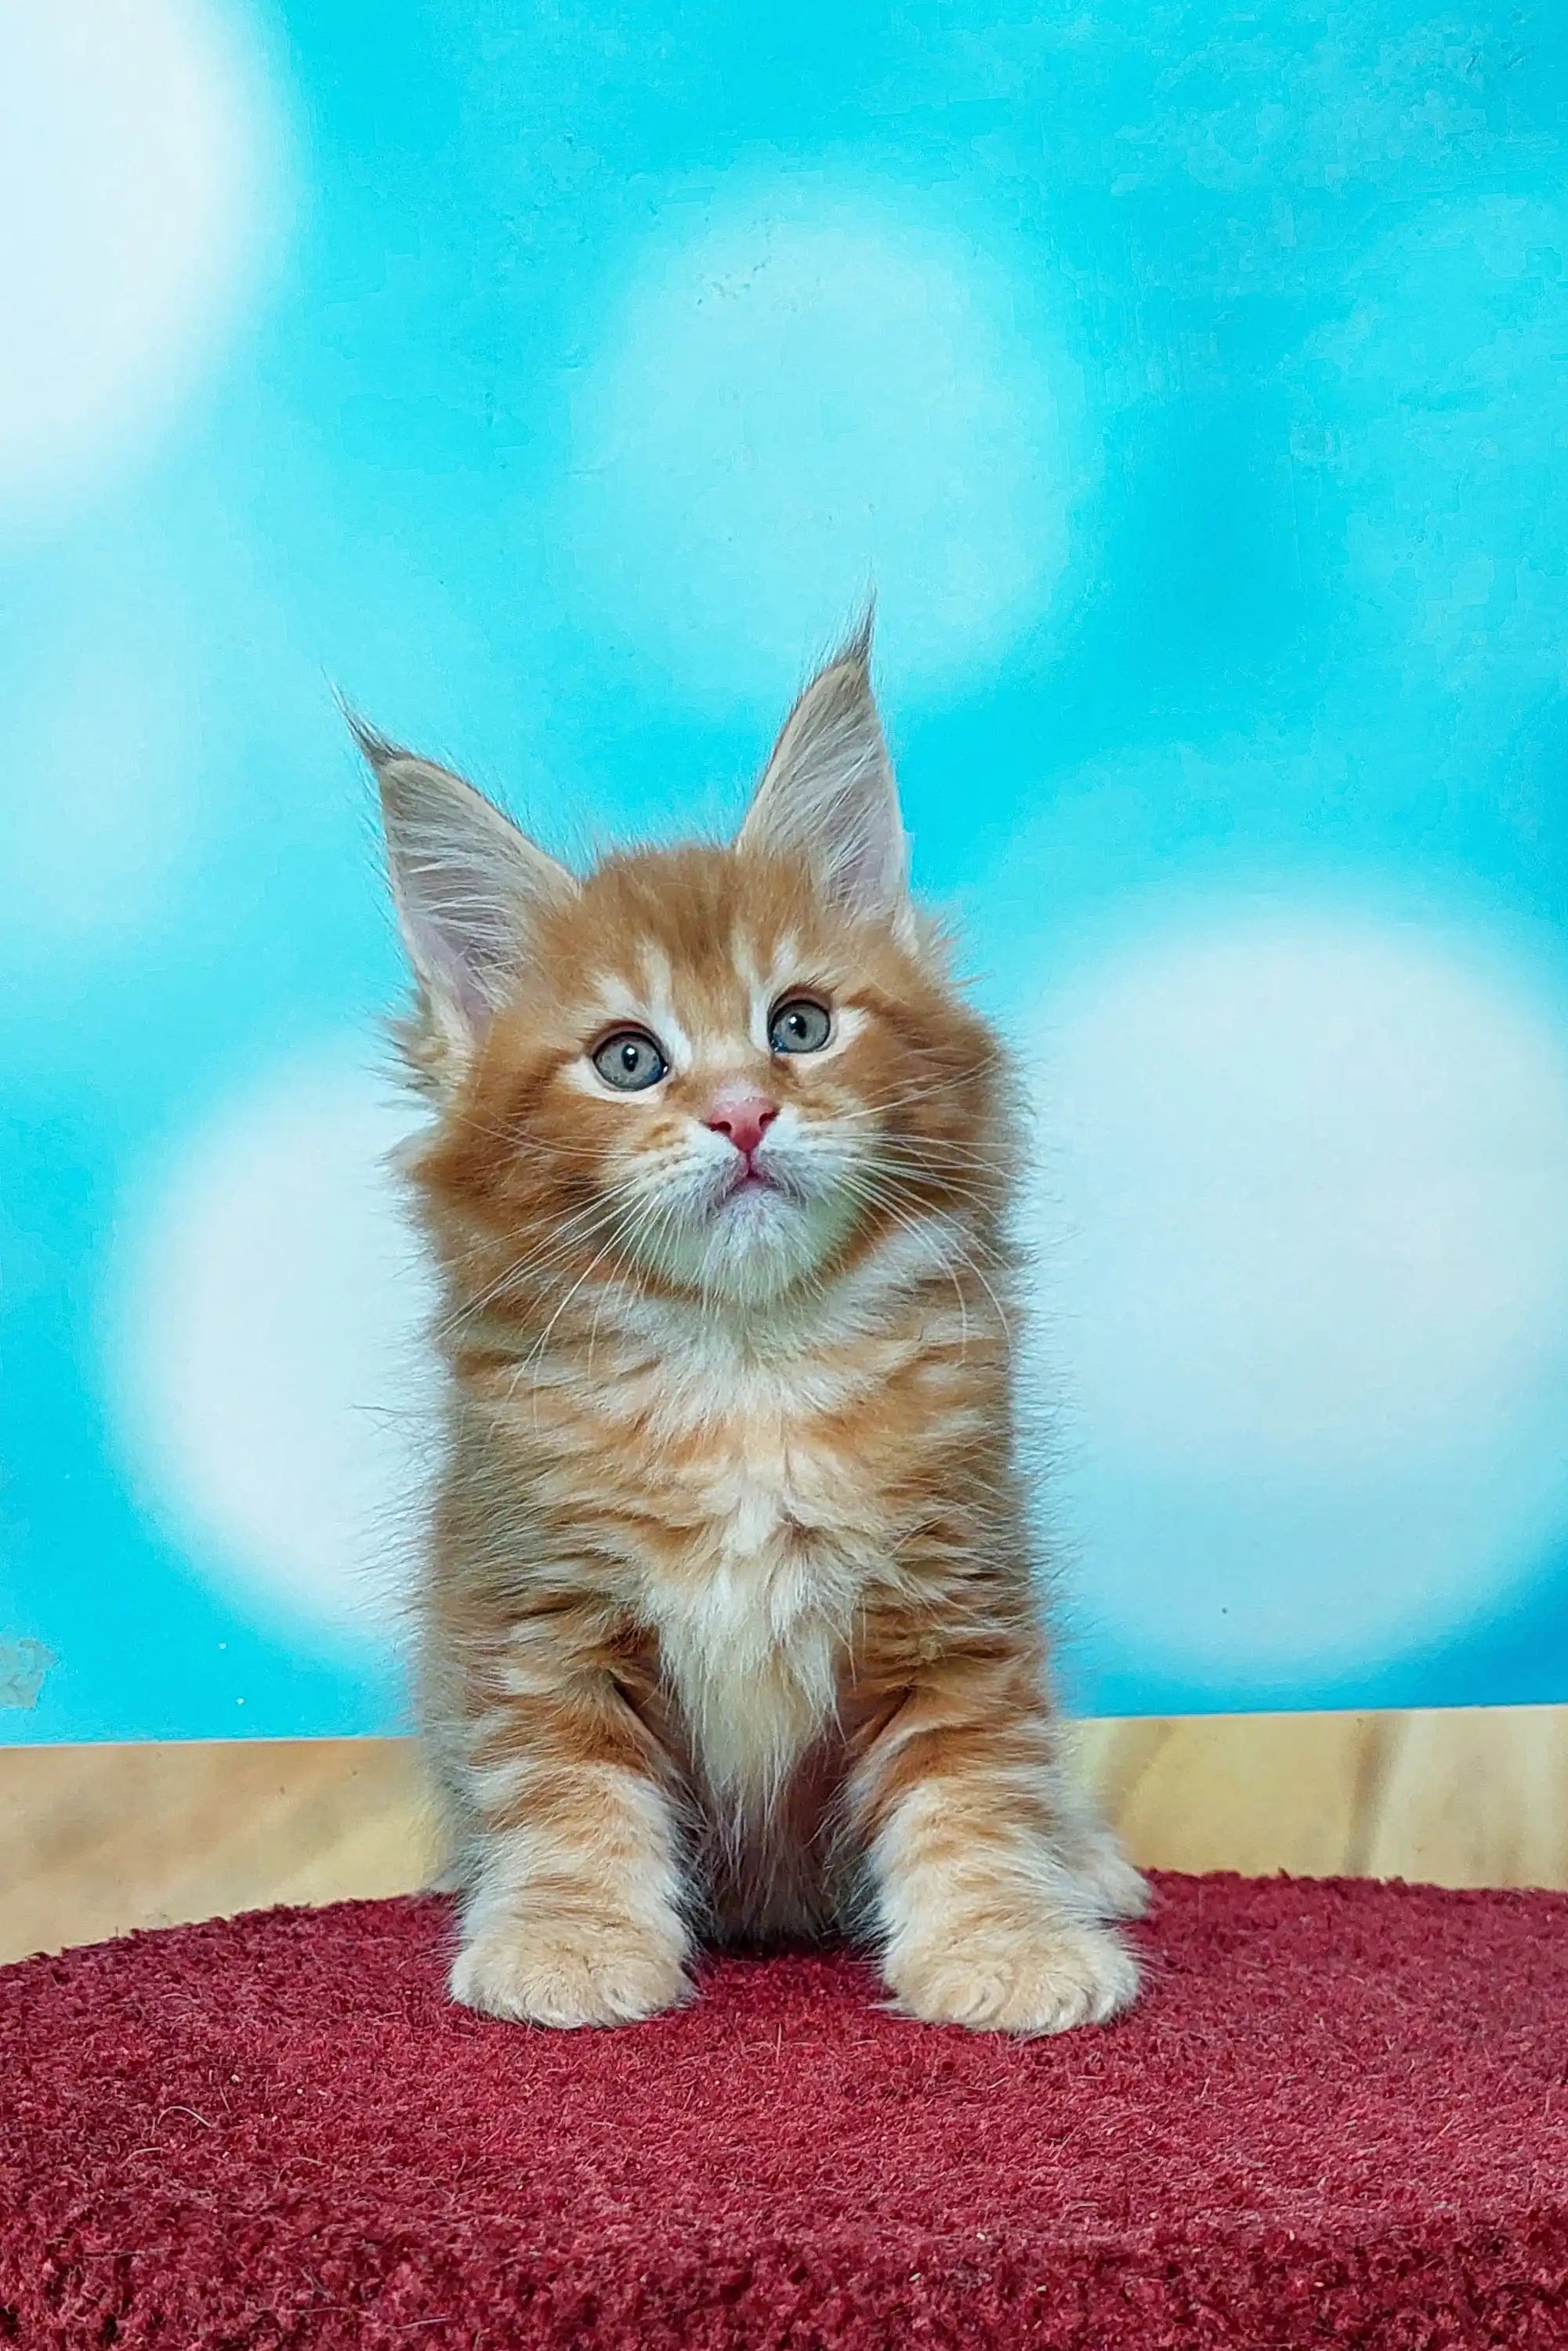 Giant Maine Coon Kittens for Sale Marvel | Kitten